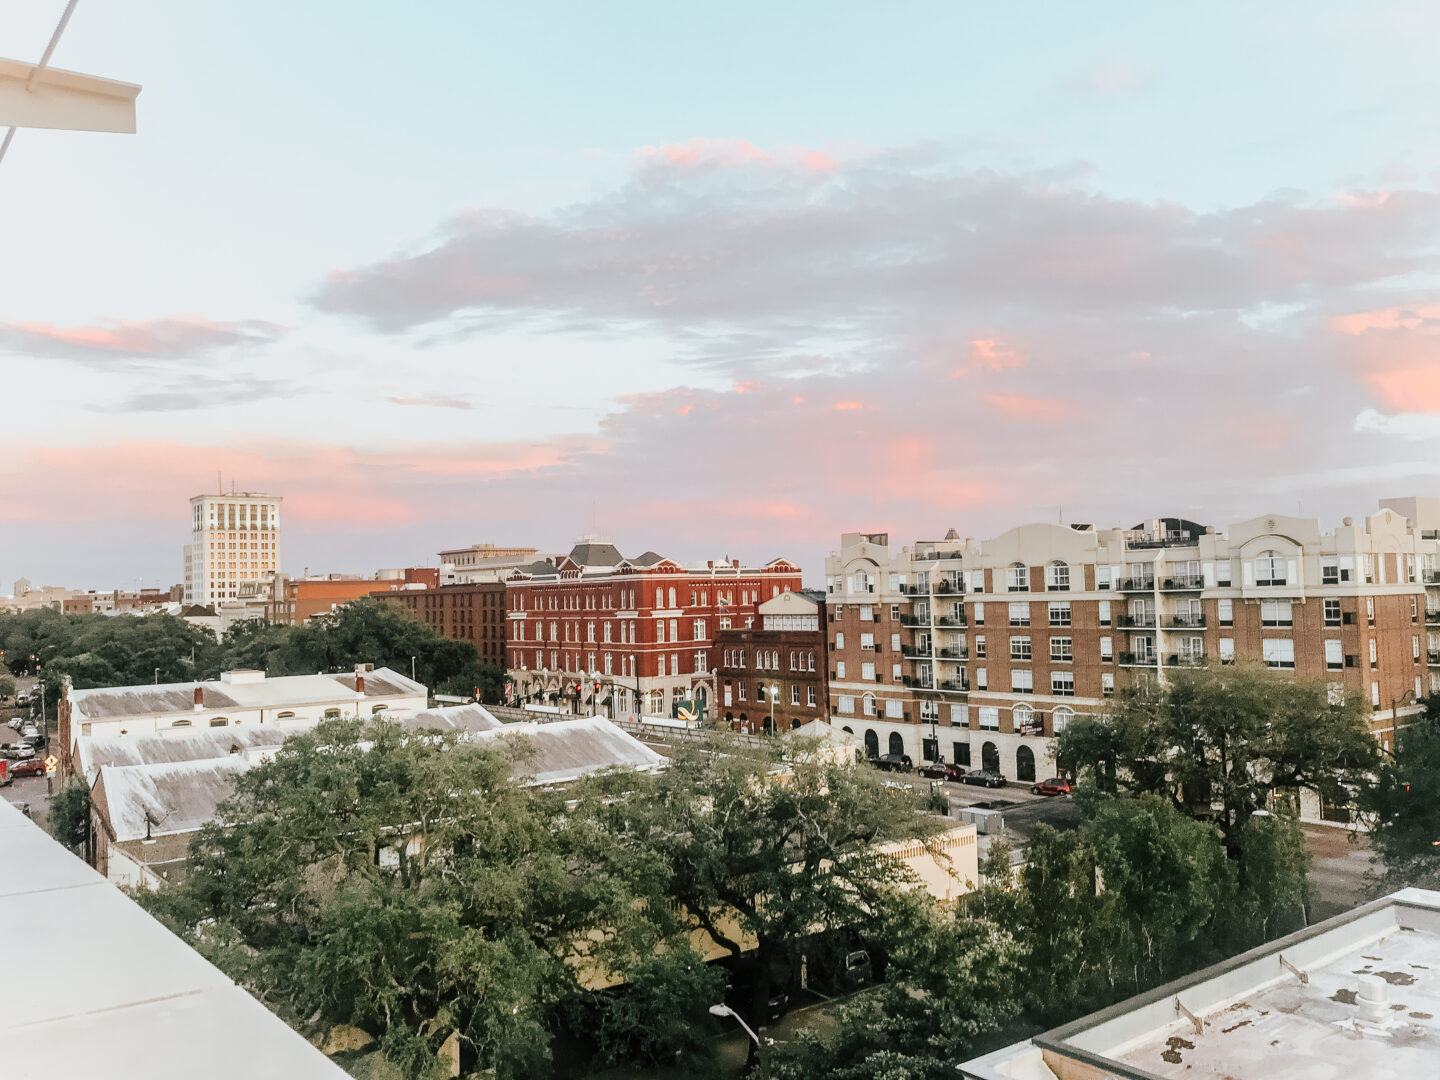 The Alida Hotel Review – Savannah